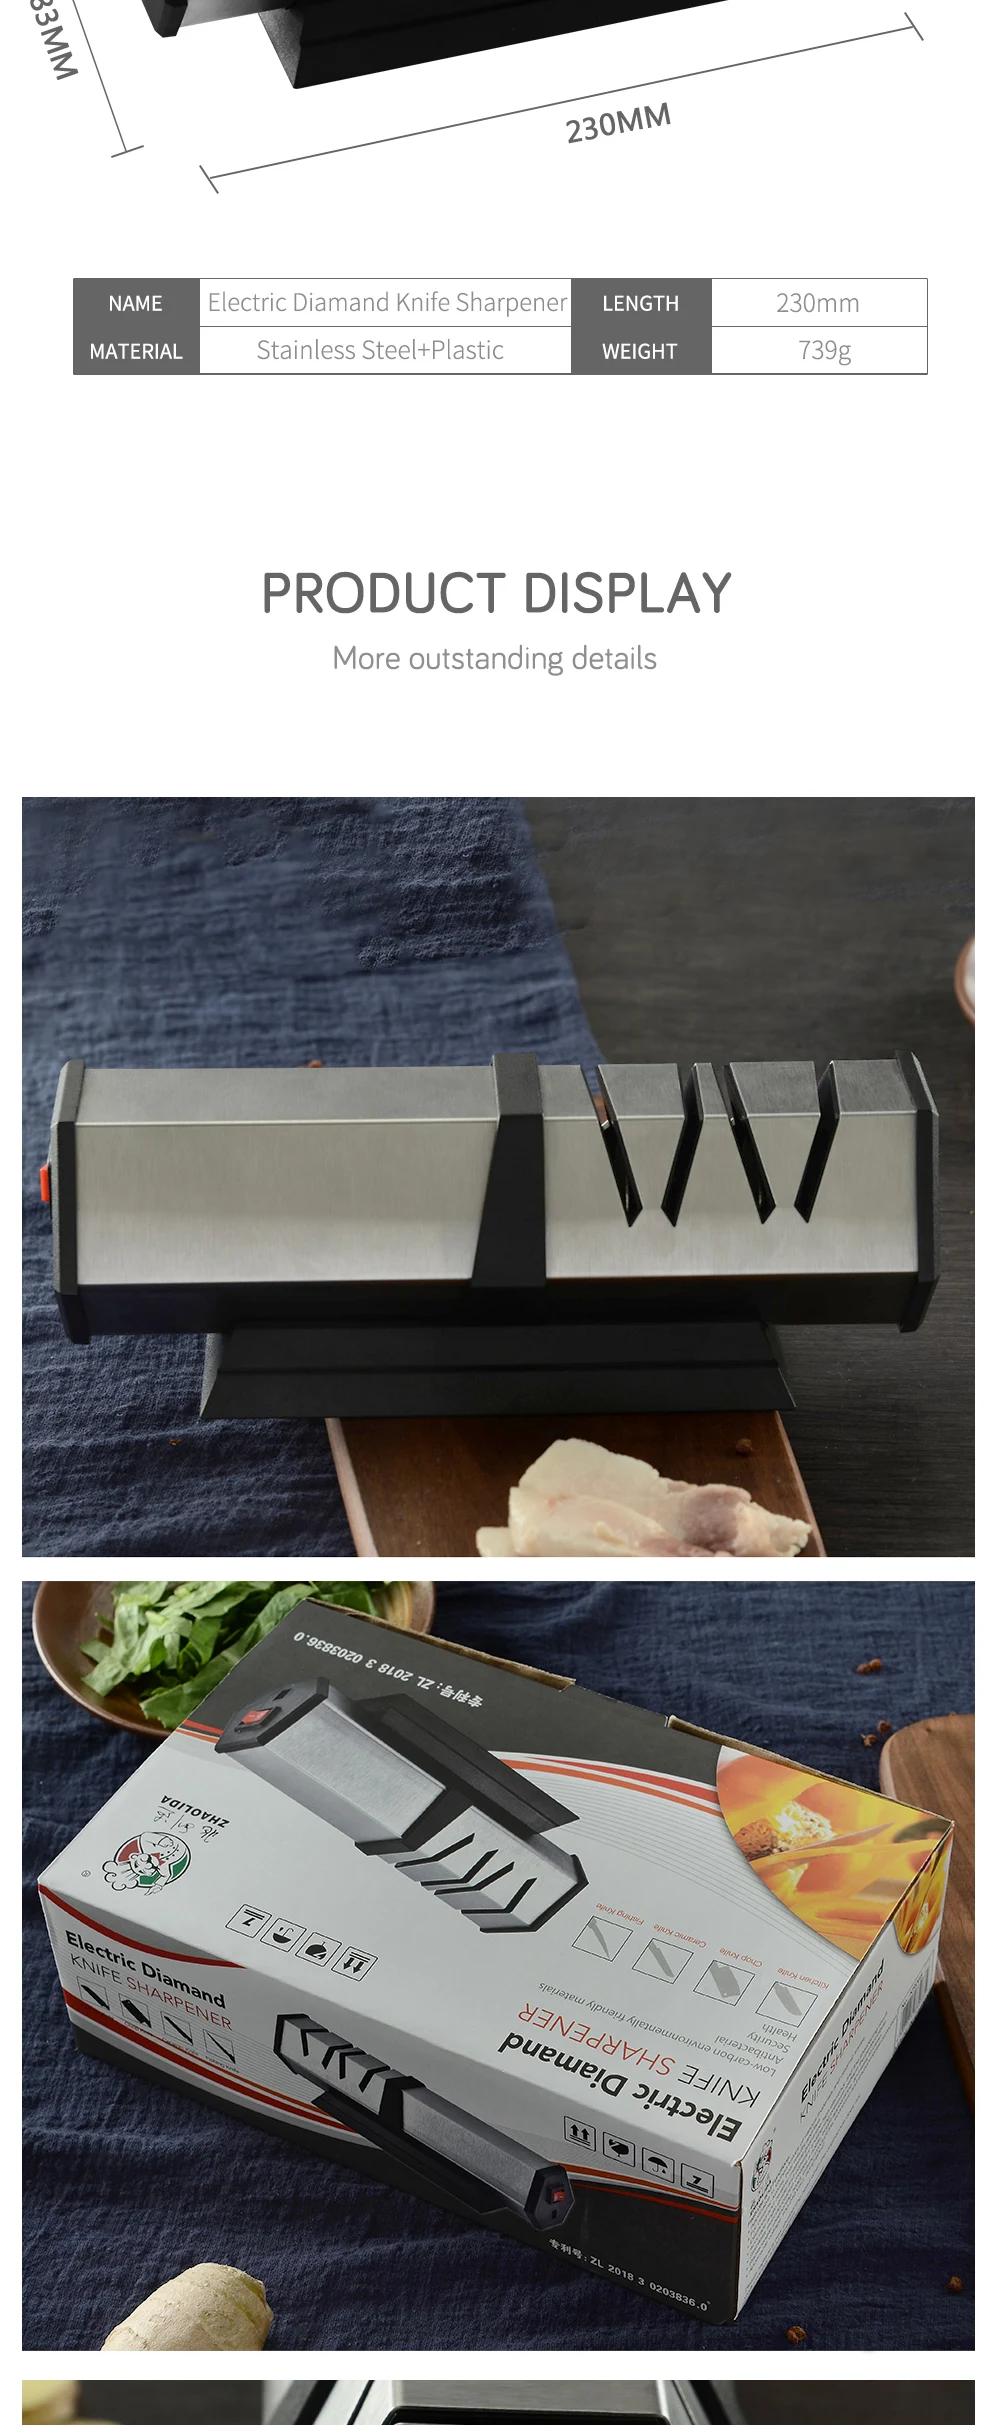 XYj электрическая точилка для кухонных ножей, кухонные ножи из нержавеющей стали, система заточки точильных камней, инструменты из вольфрамовой стали